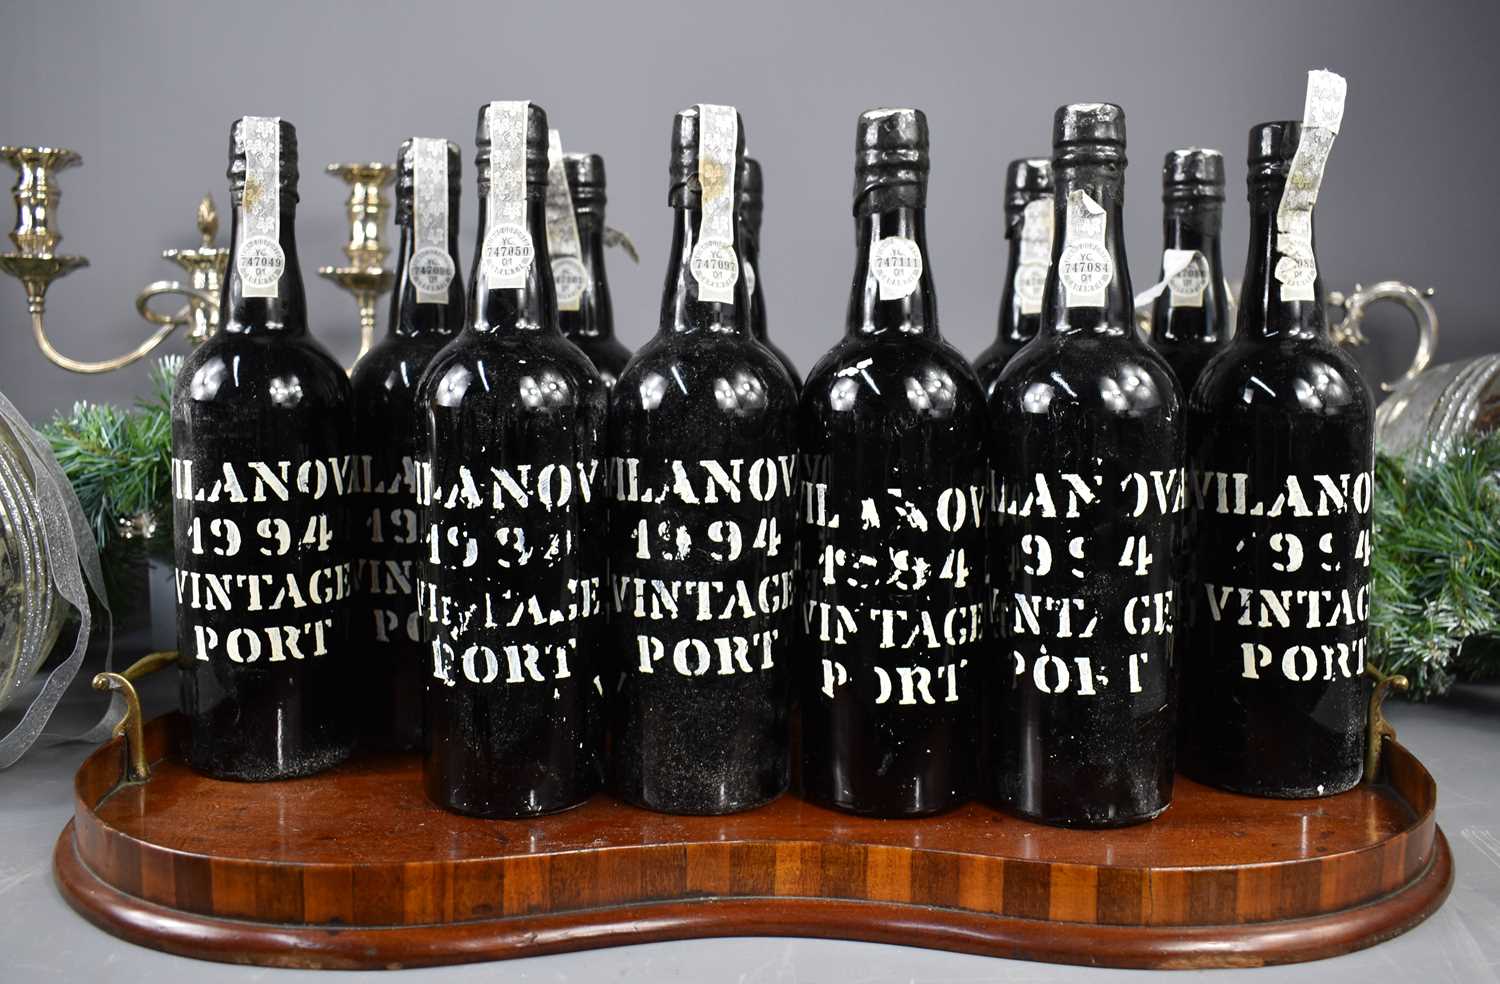 Lot 28 - Twelve bottles of Vilanova Vintage Port,...